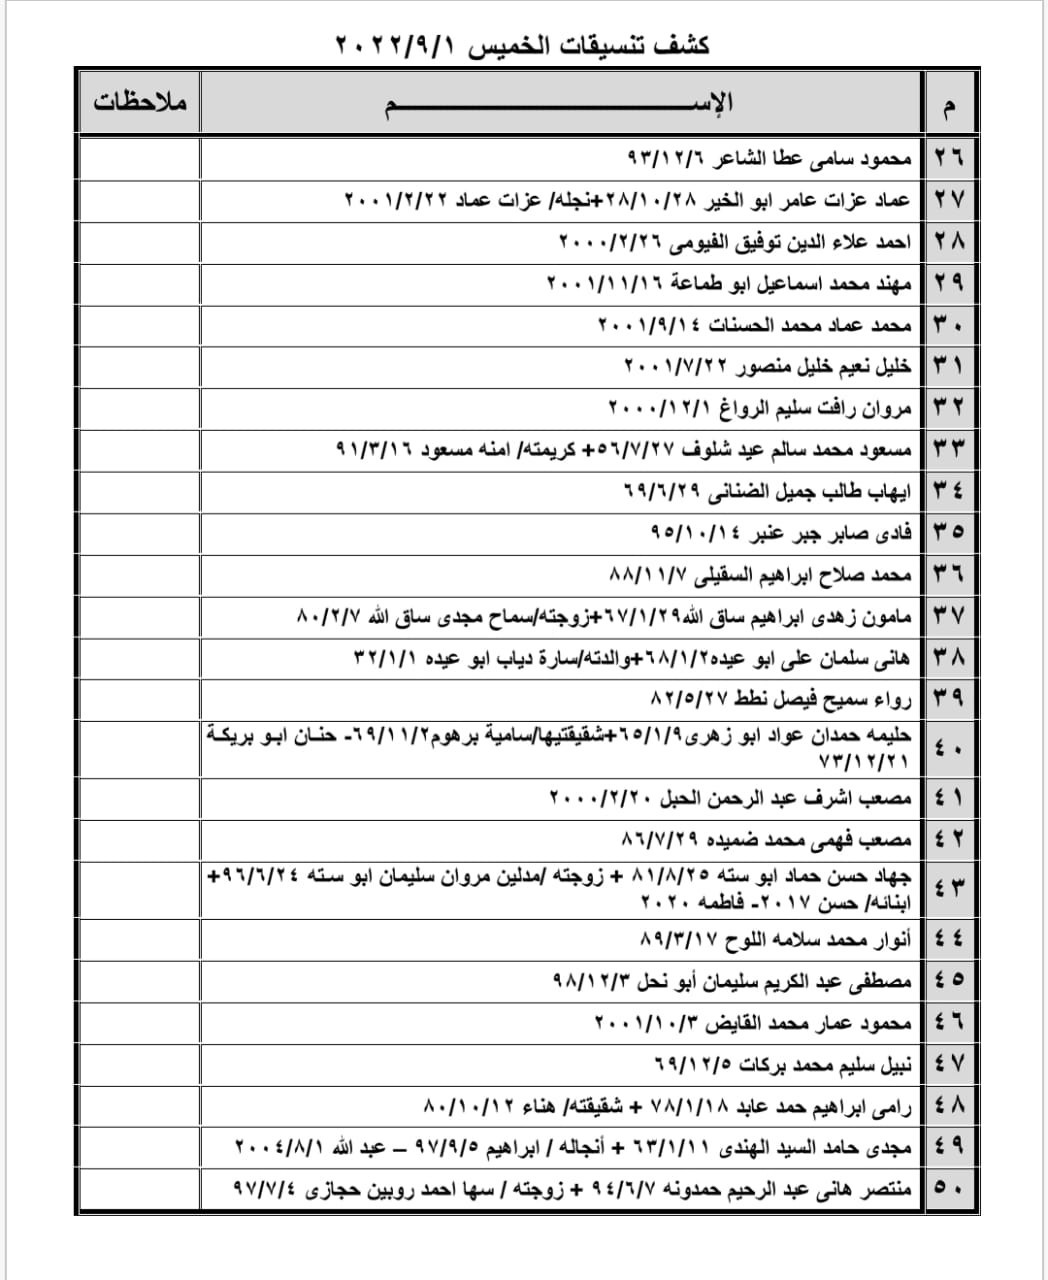 بالأسماء: كشف "تنسيقات مصرية" للسفر عبر معبر رفح يوم الخميس 1 سبتمبر 2022